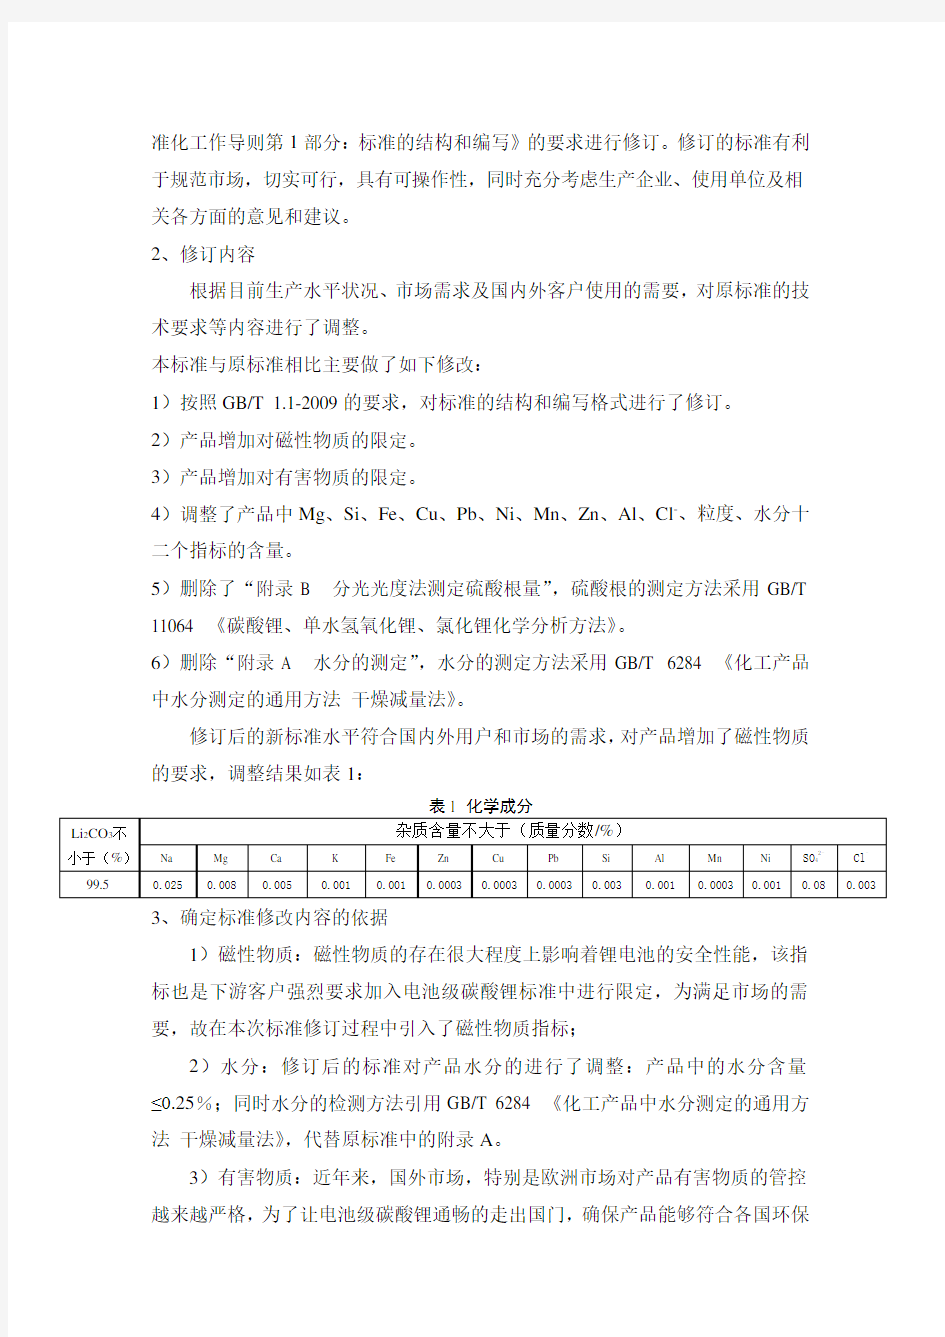 电池级碳酸锂行业标准编制说明-中国有色金属标准质量信息网